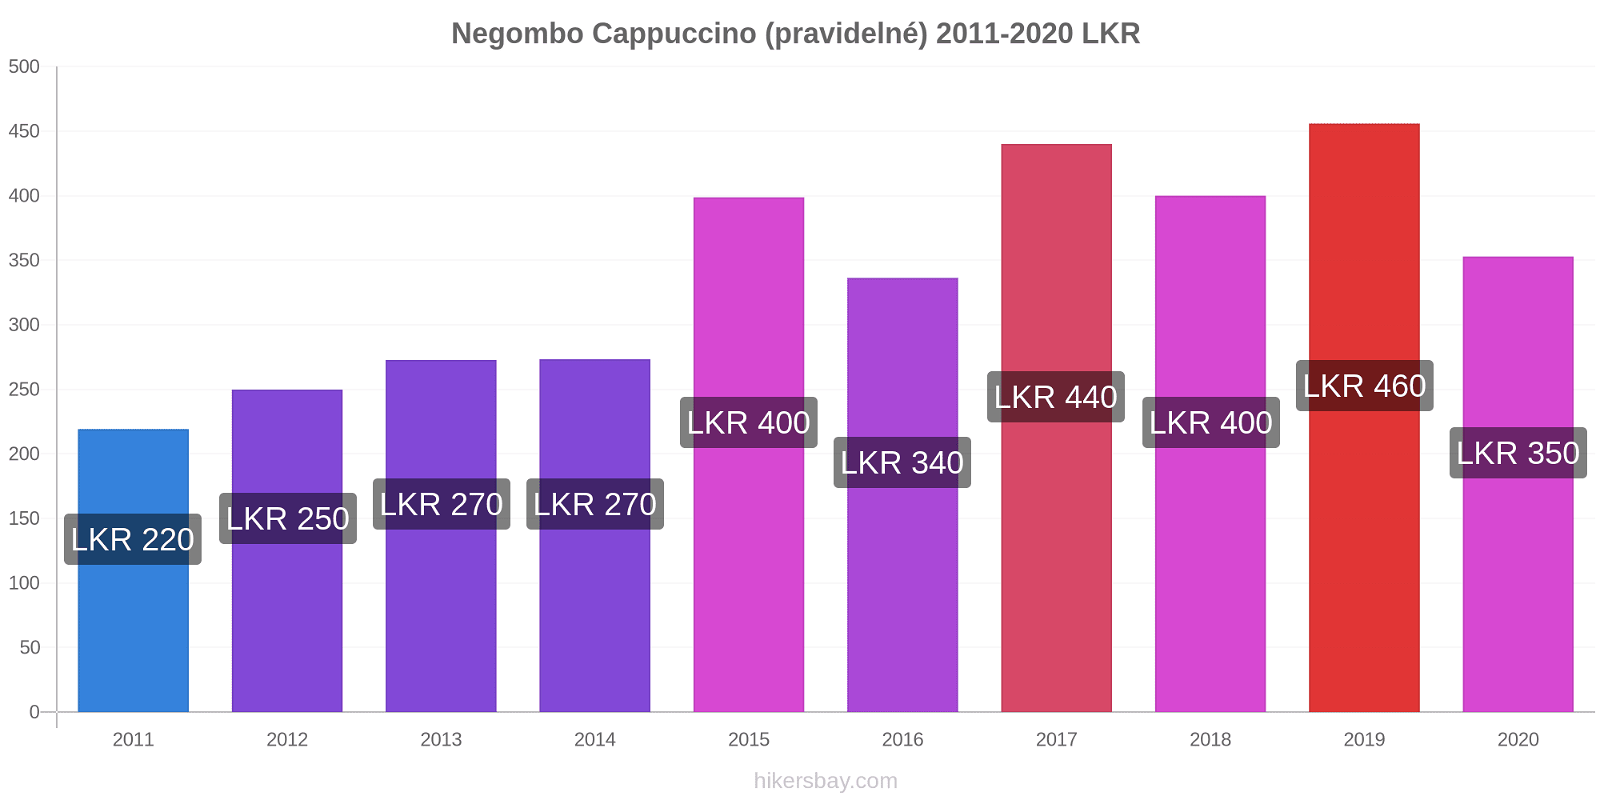 Negombo změny cen Cappuccino (pravidelné) hikersbay.com